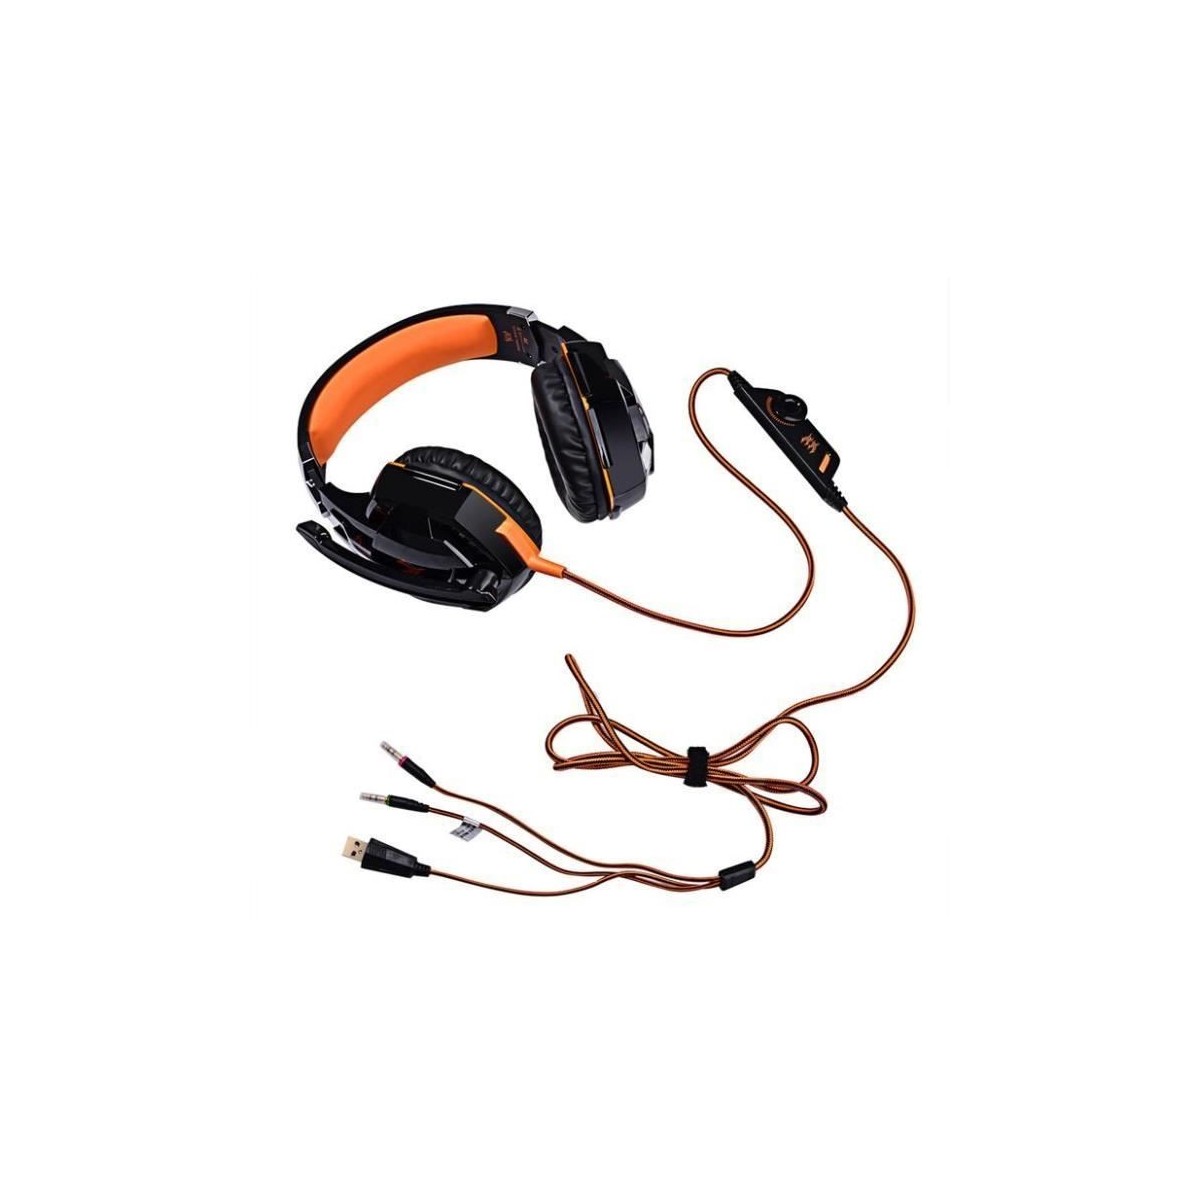 Casque Orange Réglable anti-bruit du jeux pour ordinateur Apple PS3 KOTION EACH G2000